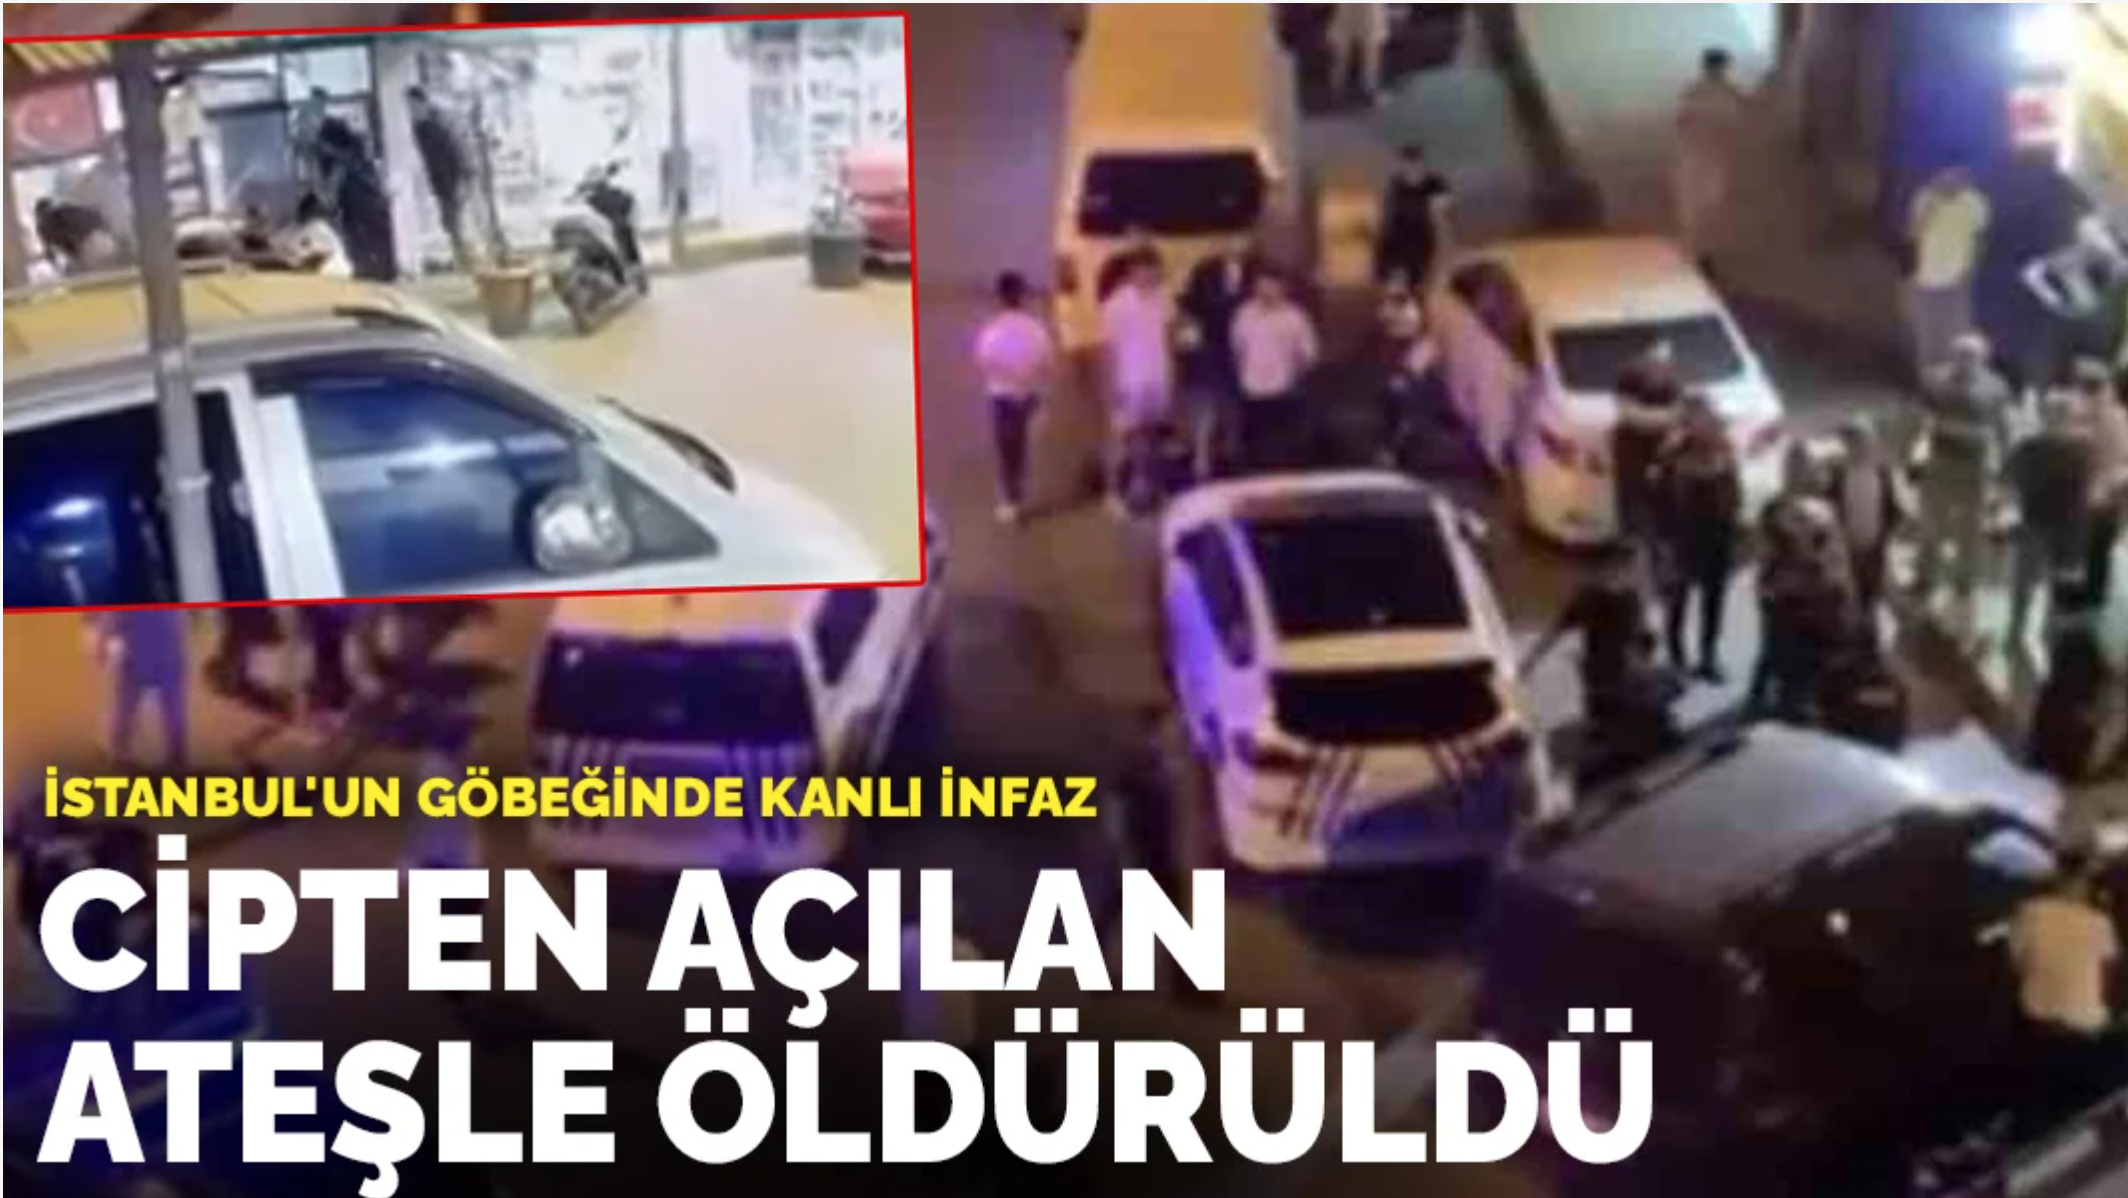 İstanbul’da Mafya hesaplaşması! Rıdvan Özyer infaz edildi: Cipten açılan ateşle öldürüldü